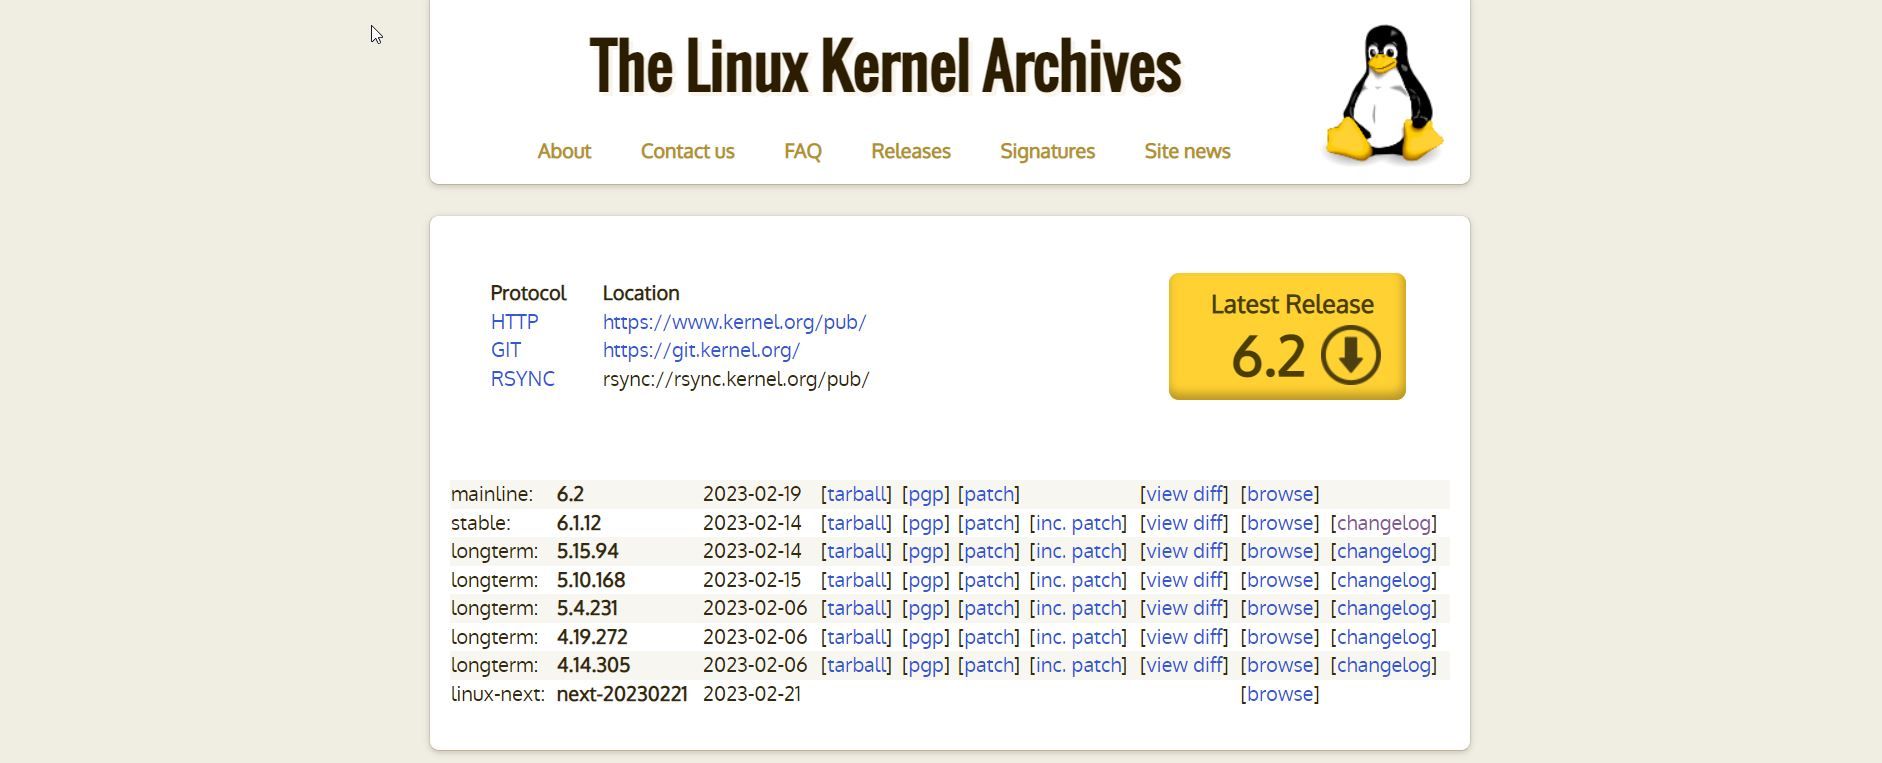 وب سایت هسته لینوکس که نسخه 6.2 را نشان می دهد